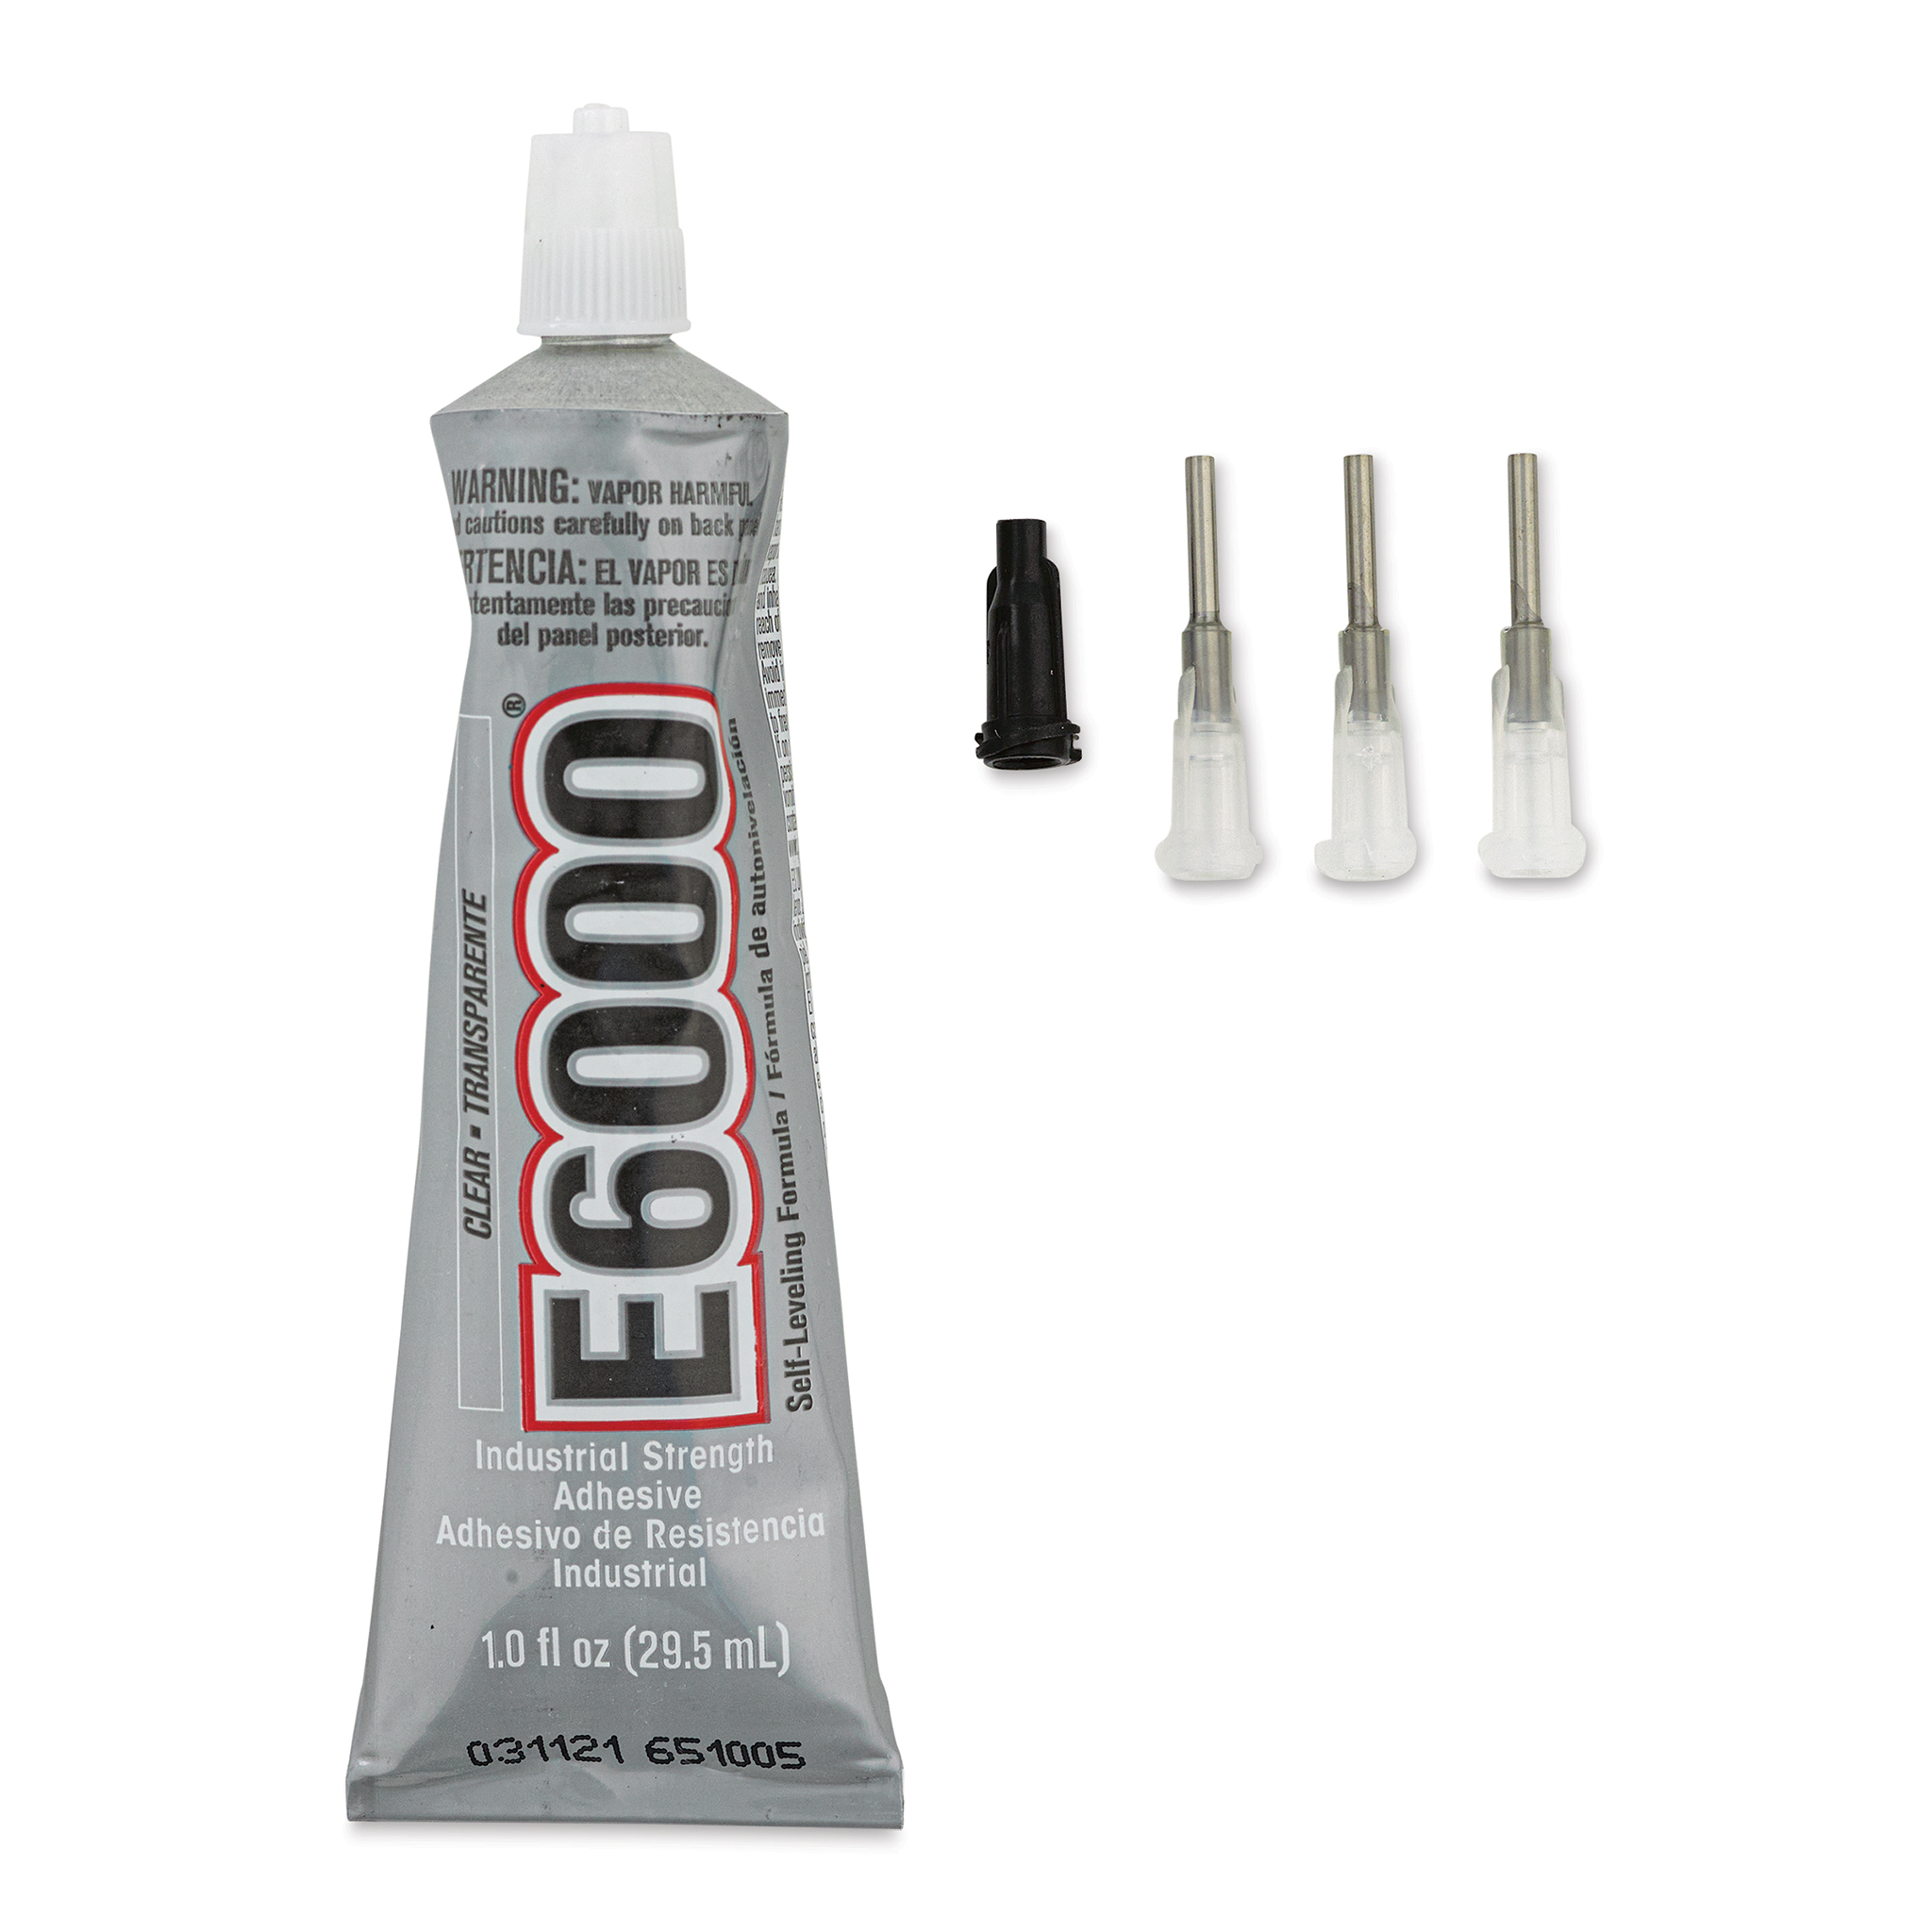 E-6000 Clear Glue with 4 Tips, 1 ounce tube